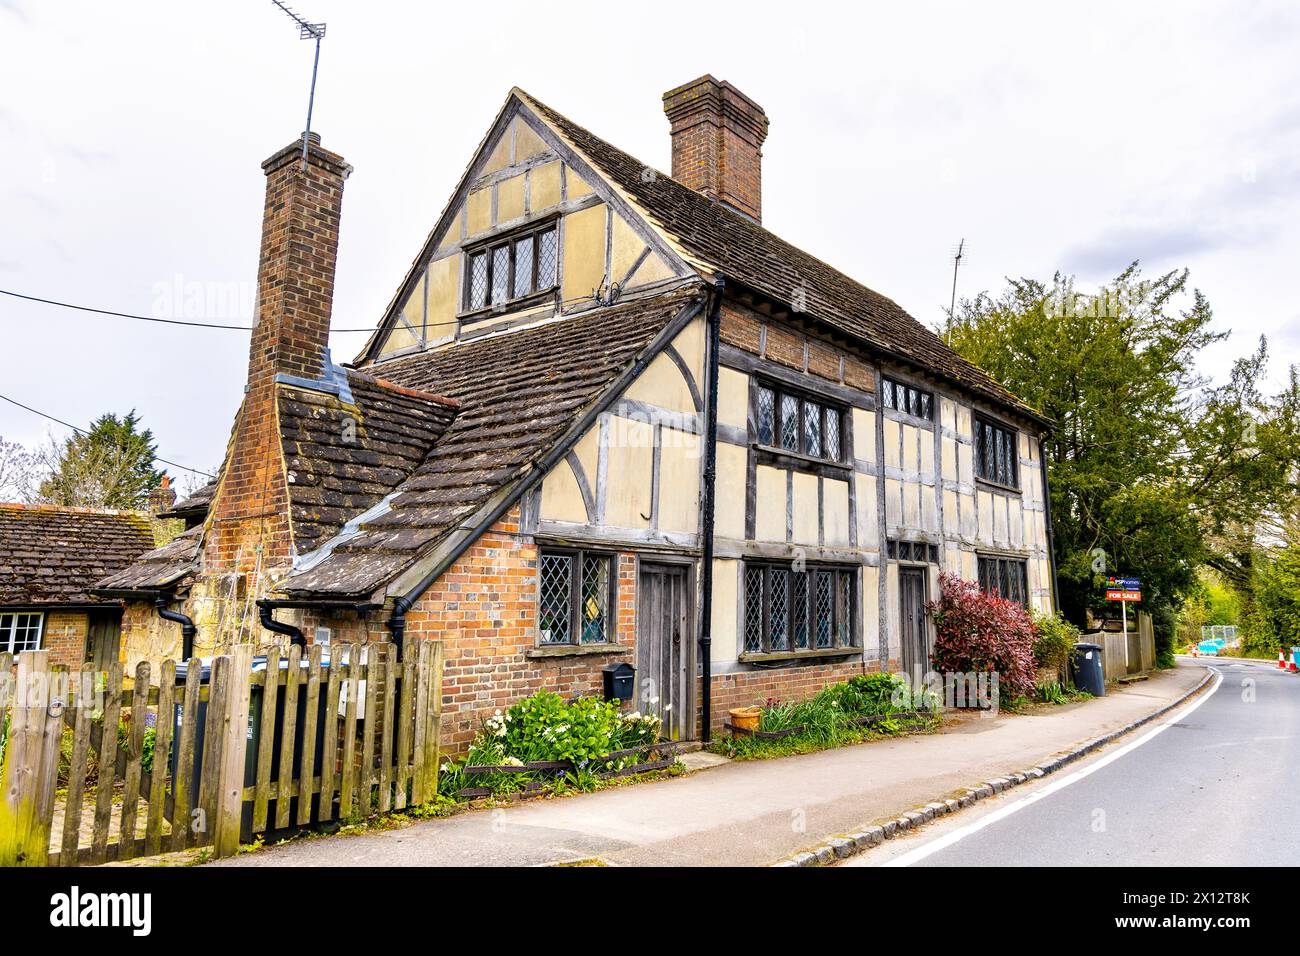 Die Casteye Cottages aus dem 17. Jahrhundert wurden in Balcombe, West Sussex, England, aufgeführt Stockfoto